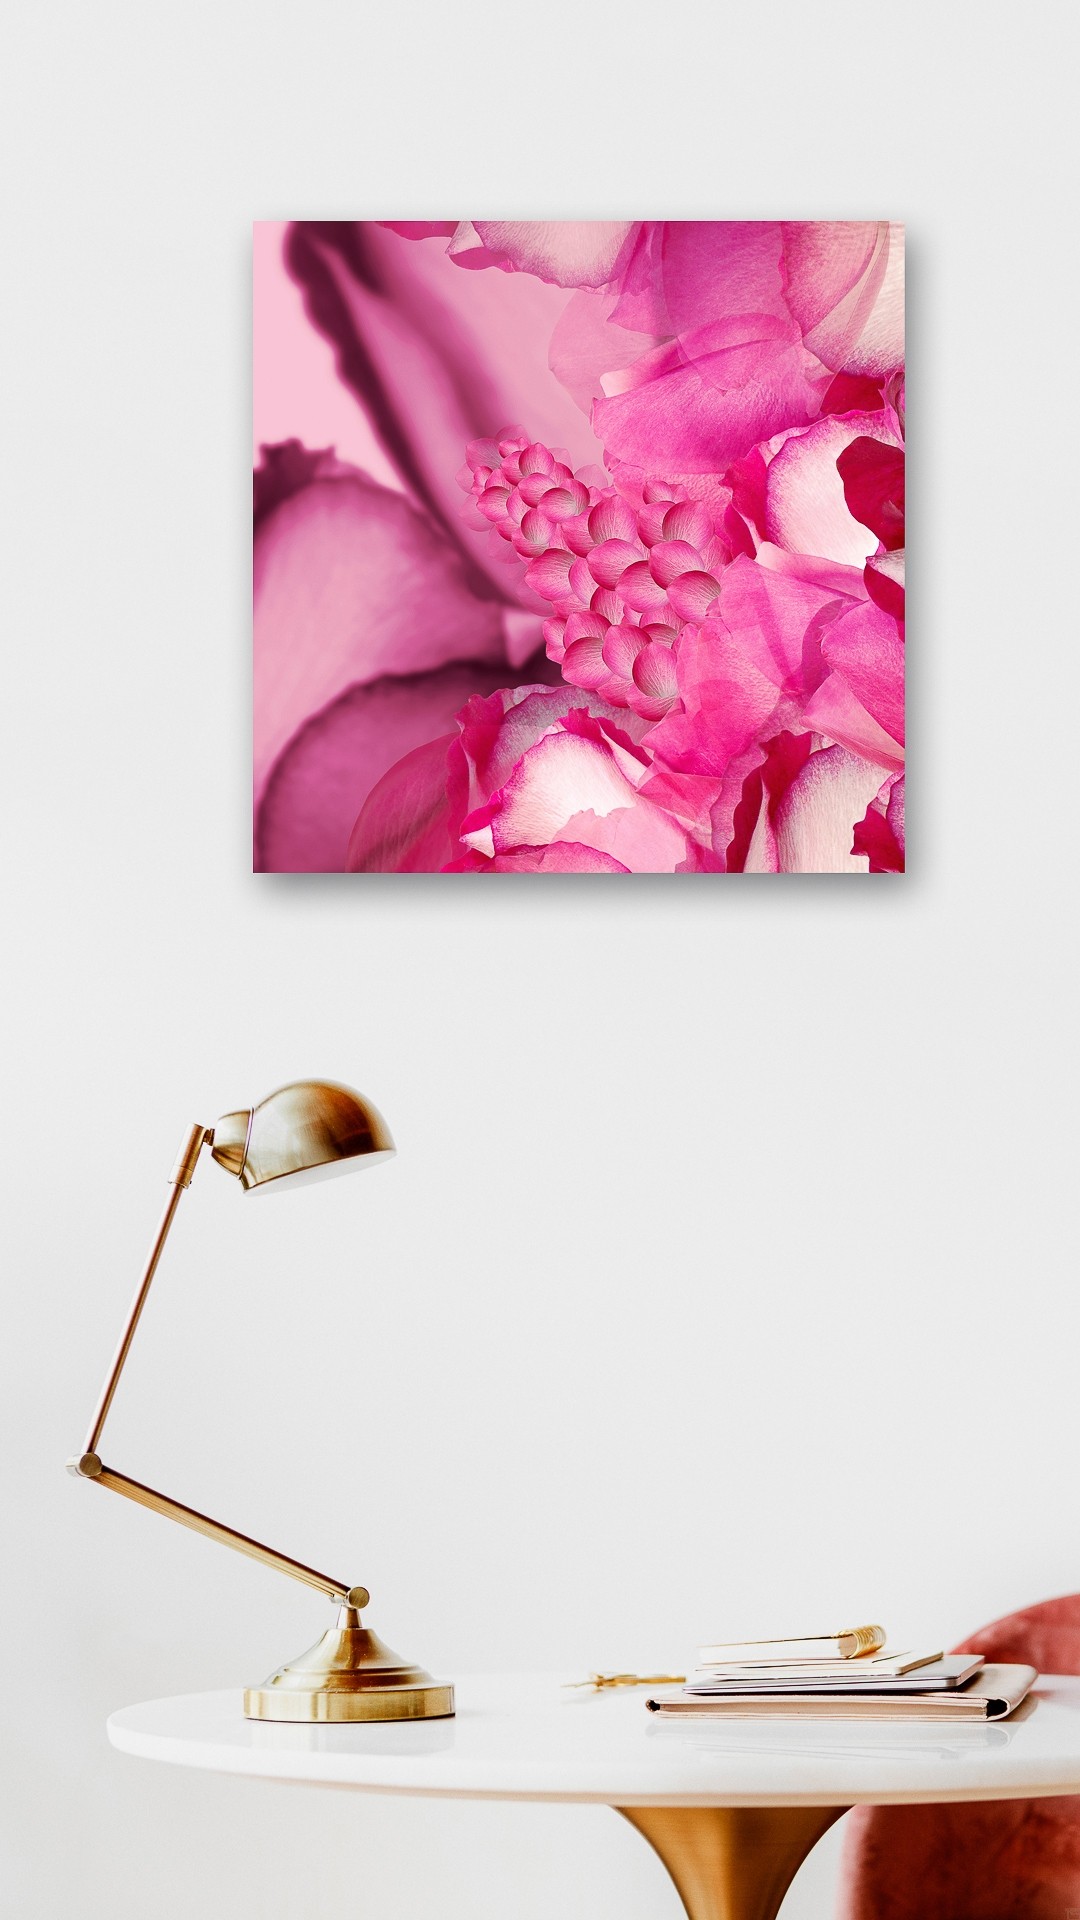 Rose Garden | Fotografie von Theresa Lambrecht, Fotodruck auf Alu-Dibond, limitierte Edition - 2